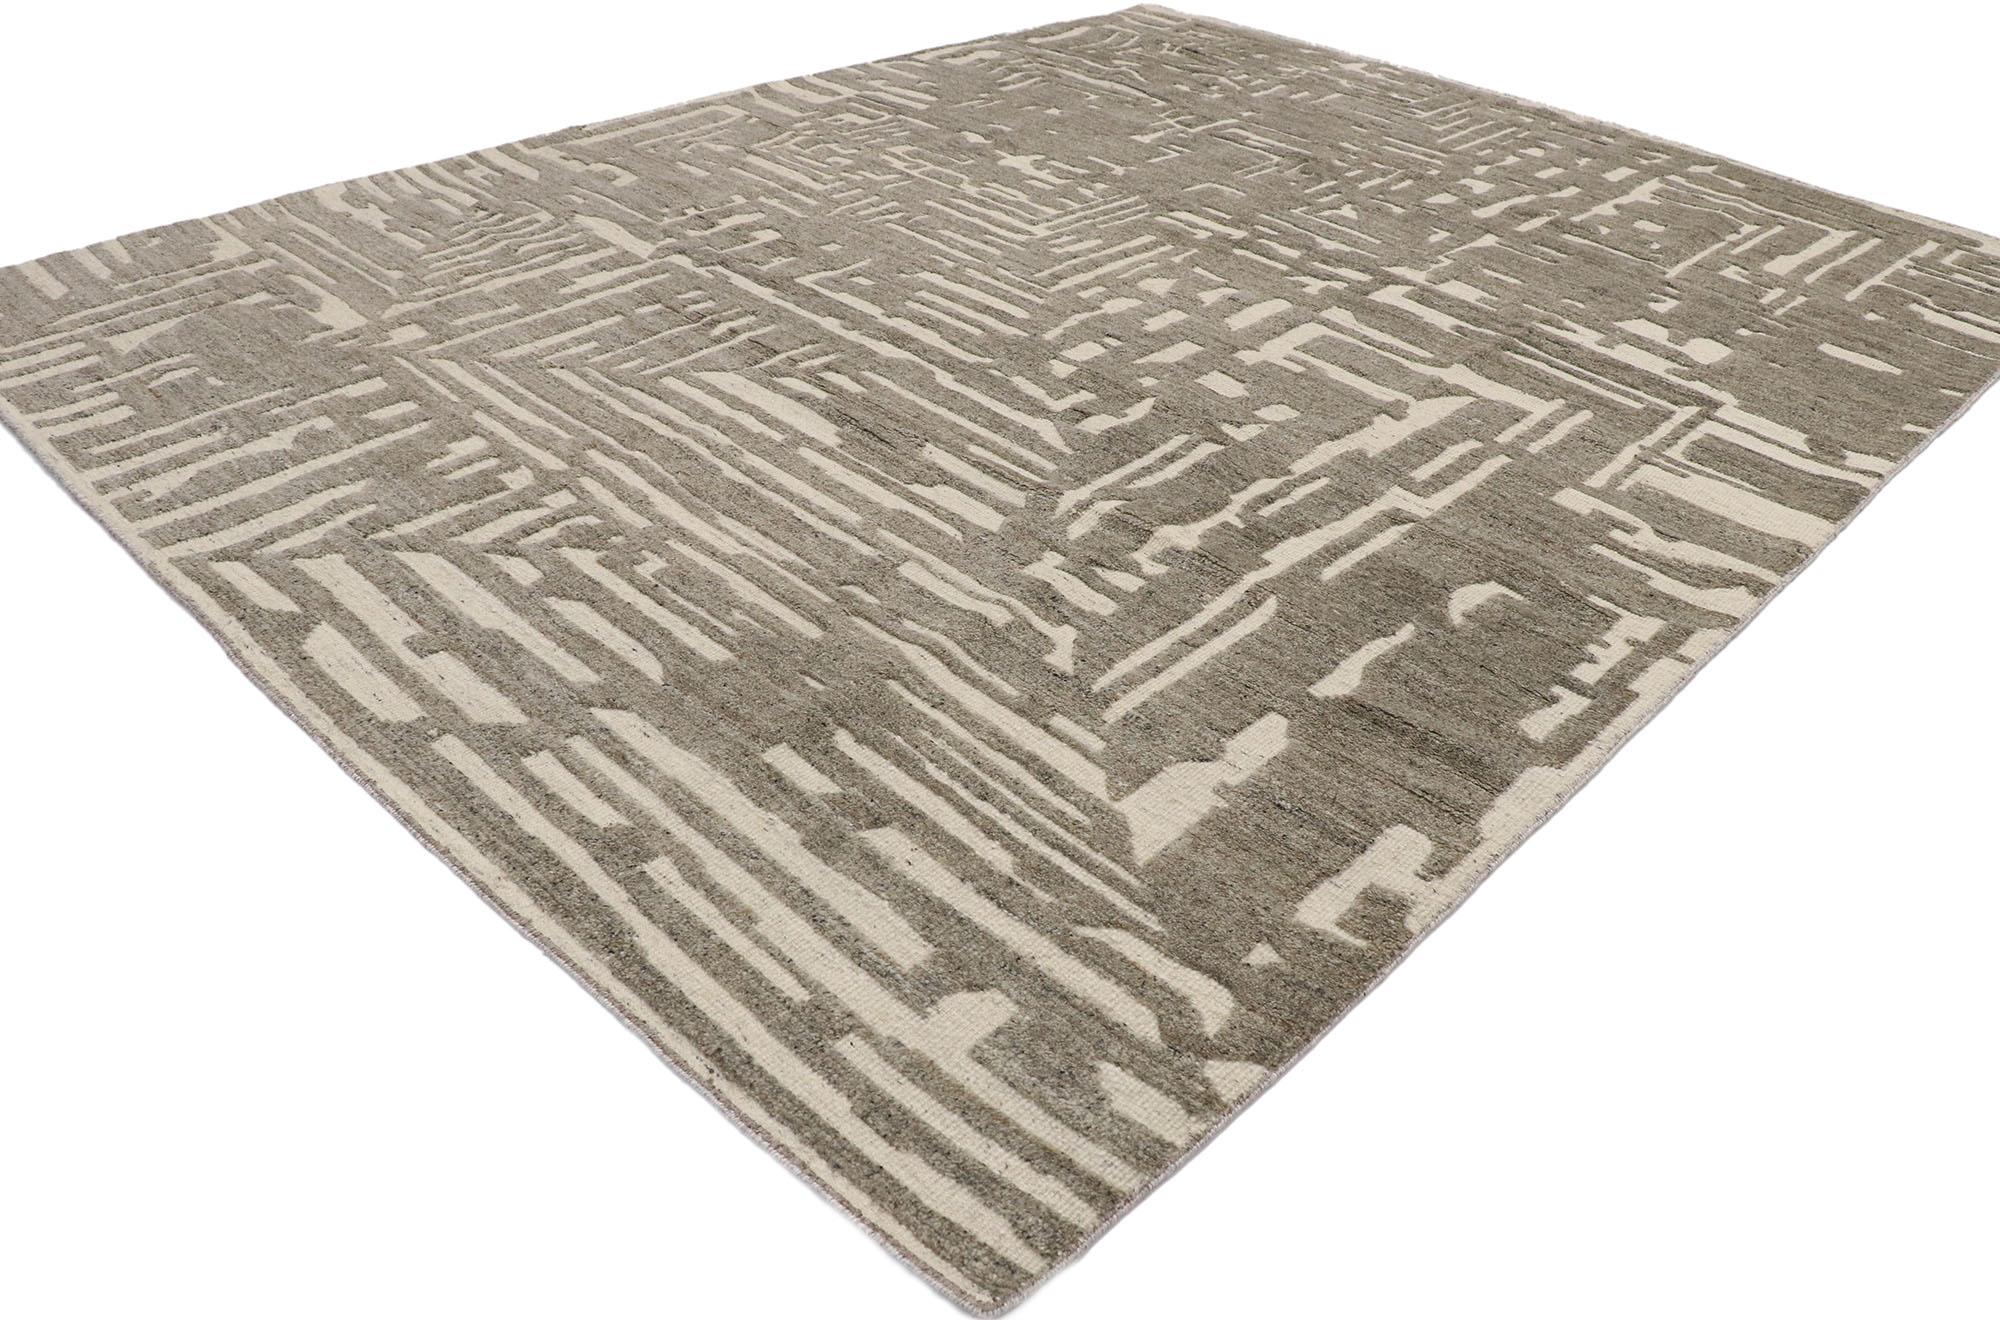 30556, Nouveau tapis Souf contemporain de style marocain avec un design linéaire en relief. Ce nouveau tapis Souf marocain contemporain en laine nouée à la main présente un motif rectiligne composé de lignes entrecroisées superposées sur un champ